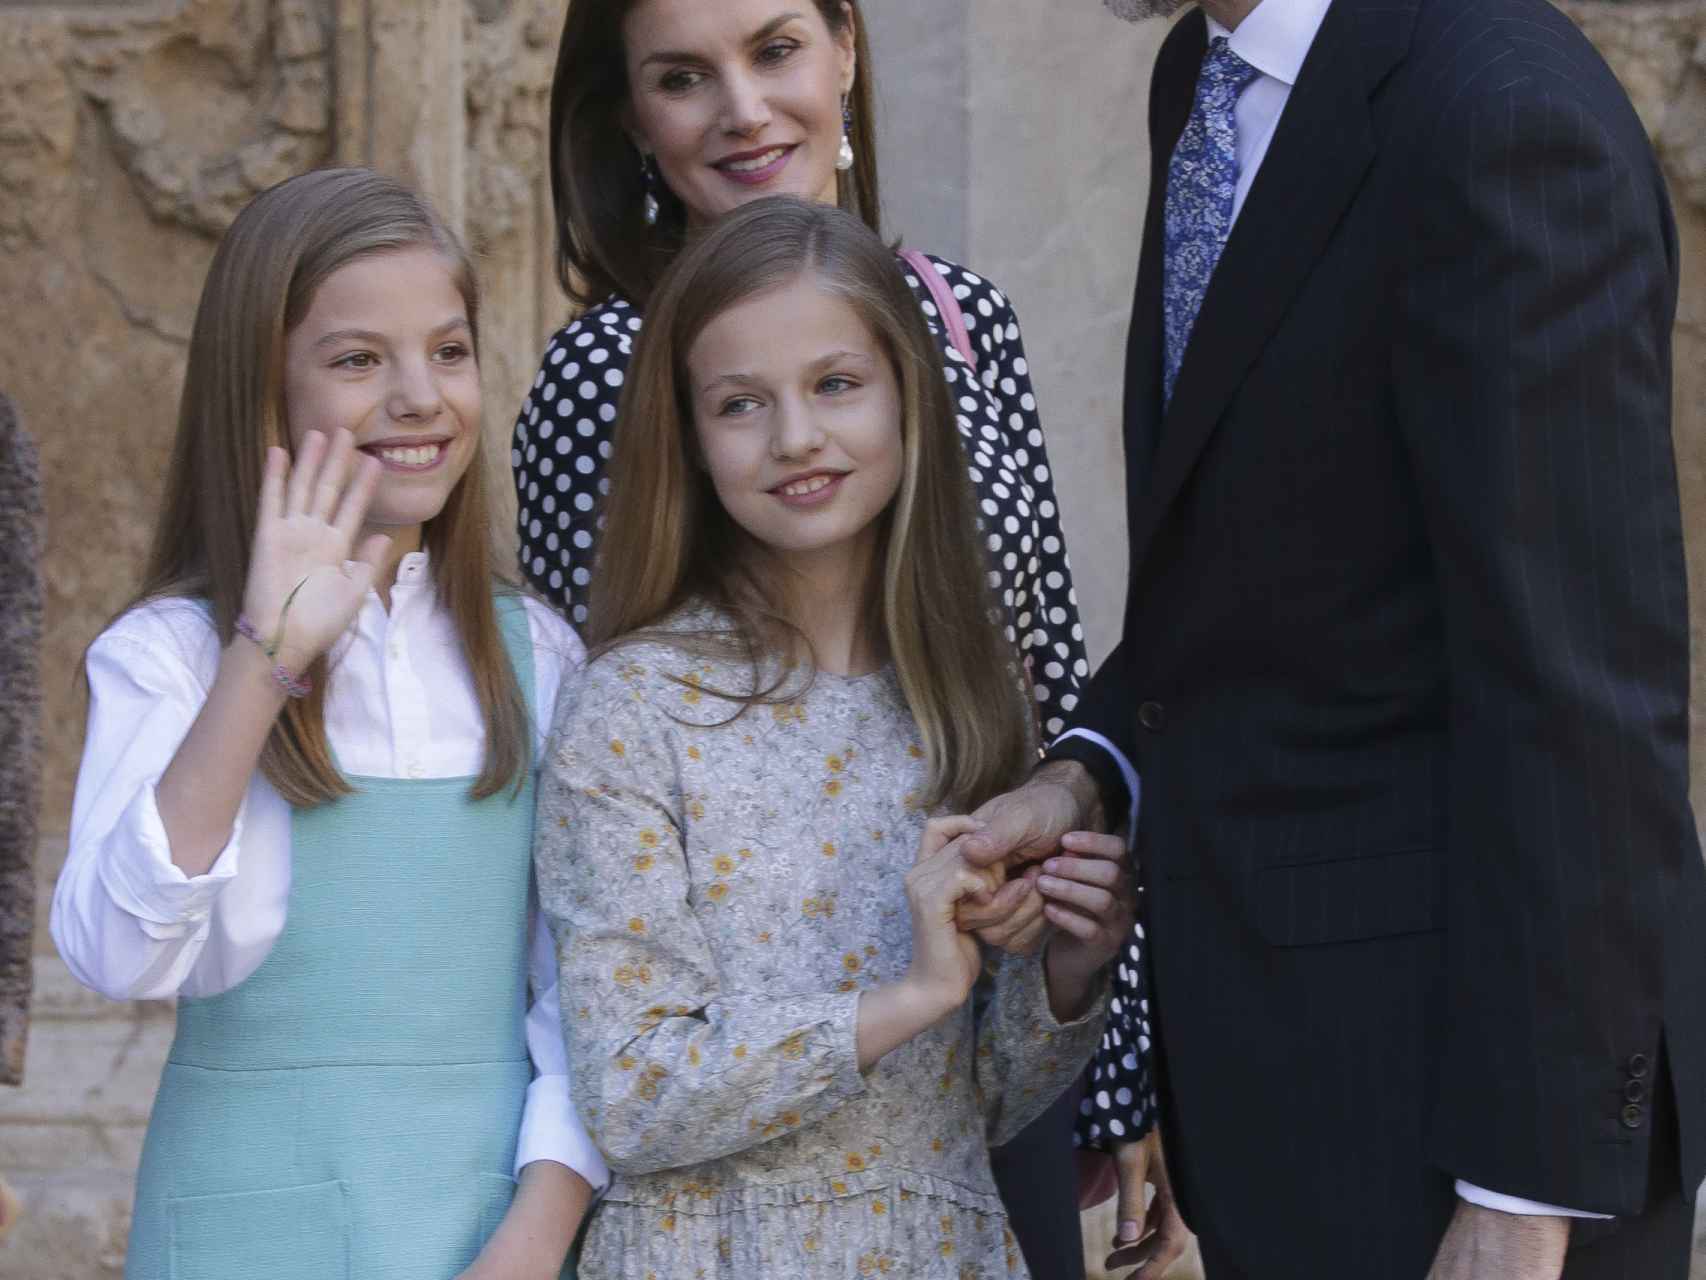 La Familia Real en la Misa de Pascua